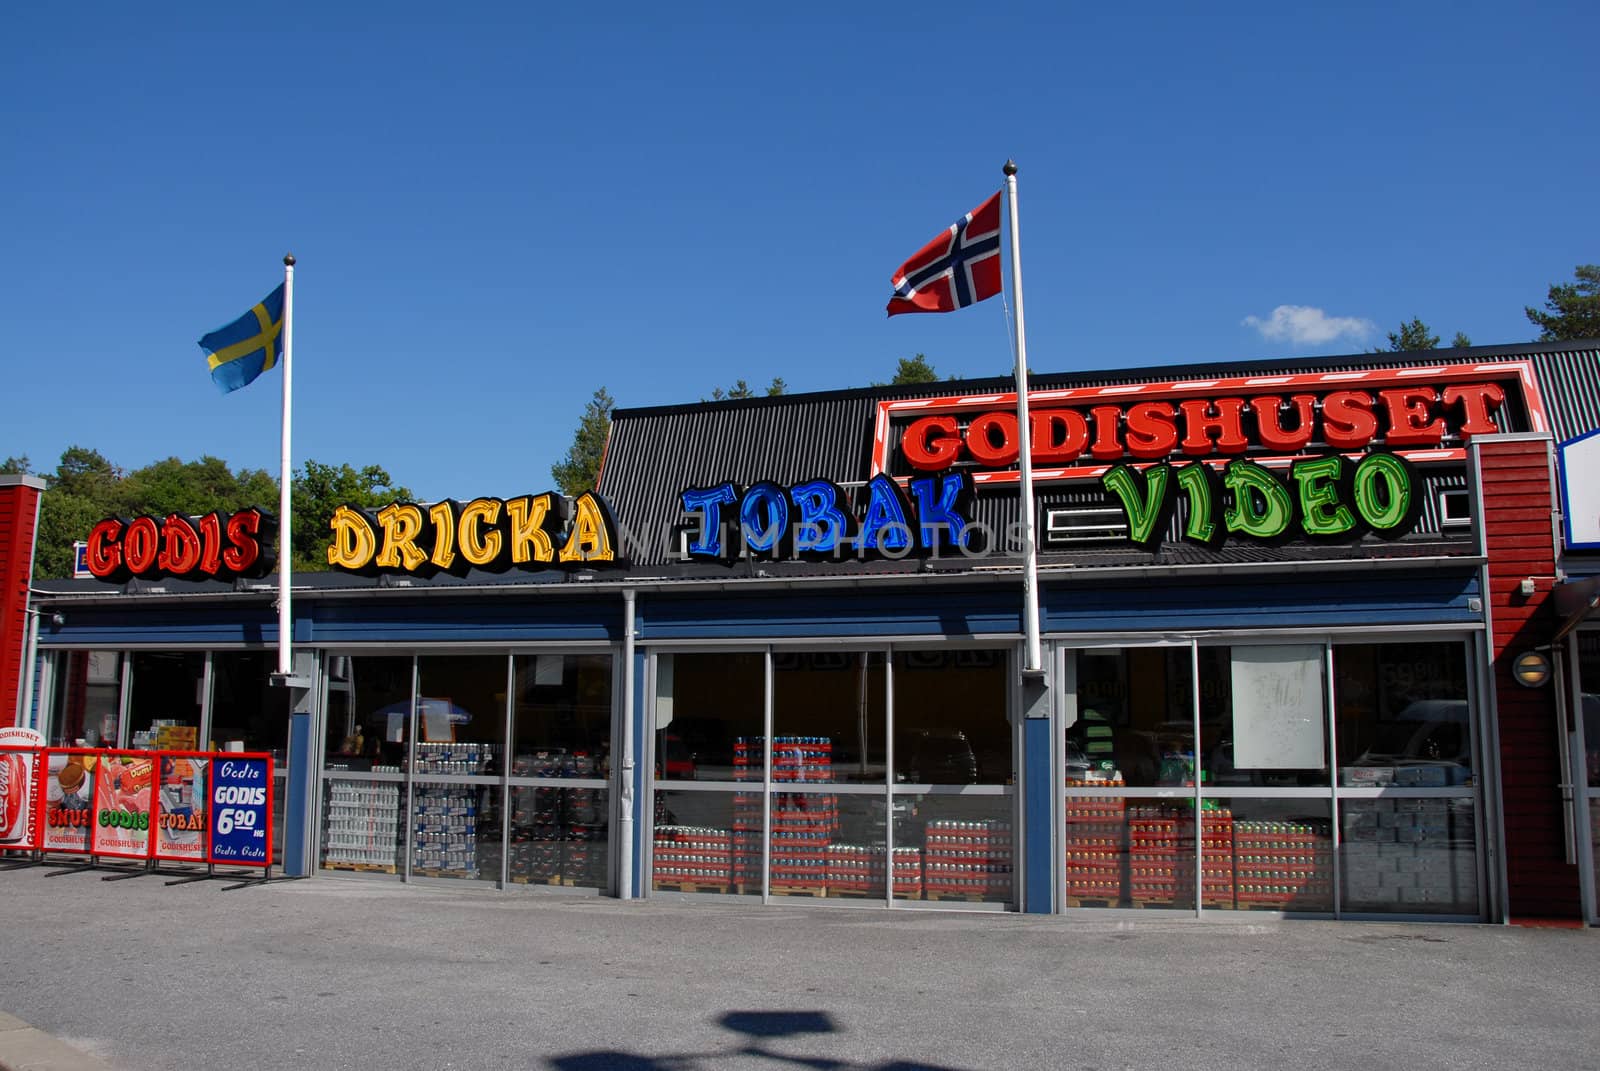 Grensehandel.
Svinesund, marknaden. (old Svinesund)
Sweden 2008. 